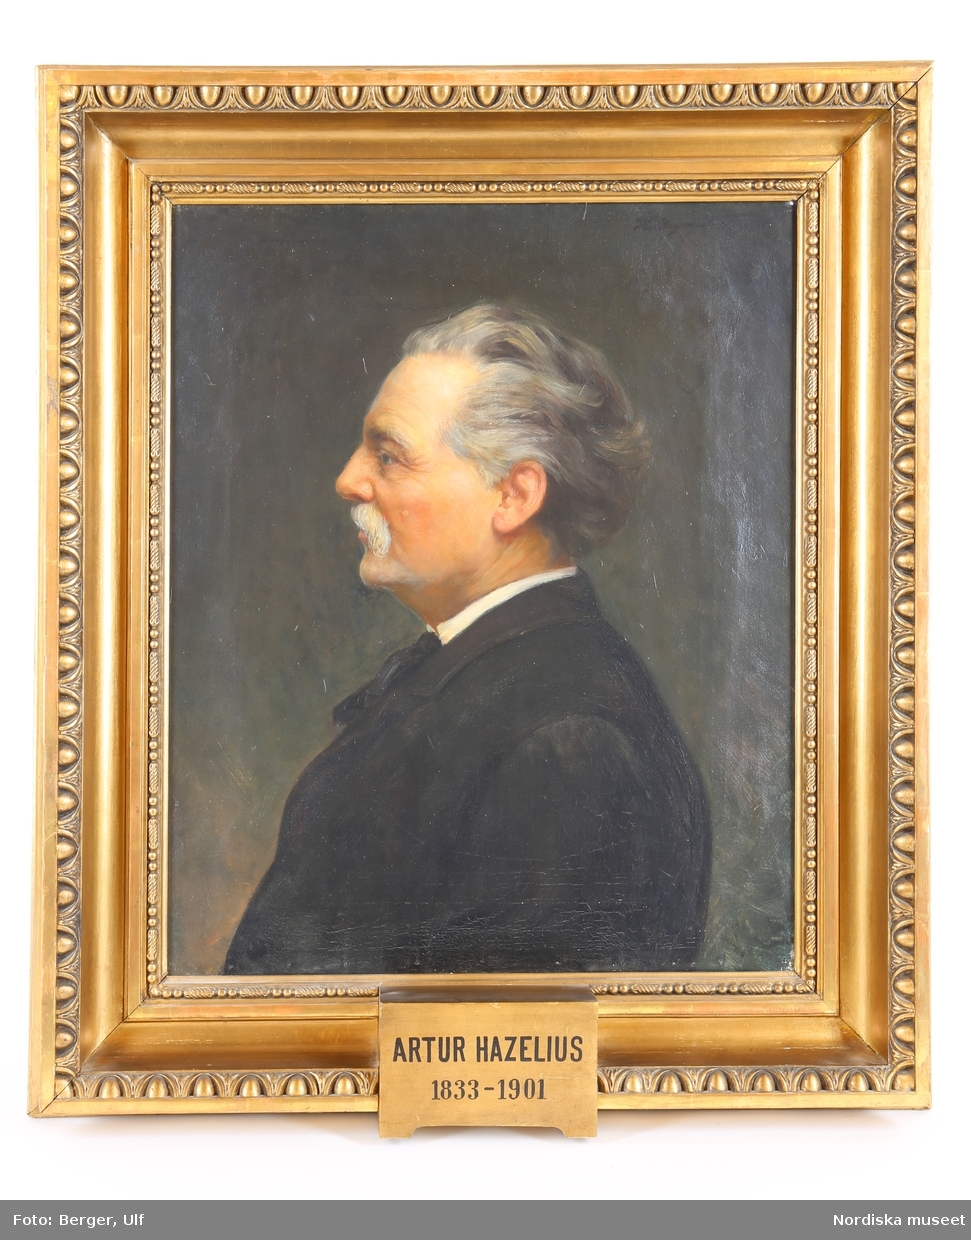 Porträtt förställande Artur Hazelius (1833-1901), Nordiska museets och Skansens grundare.